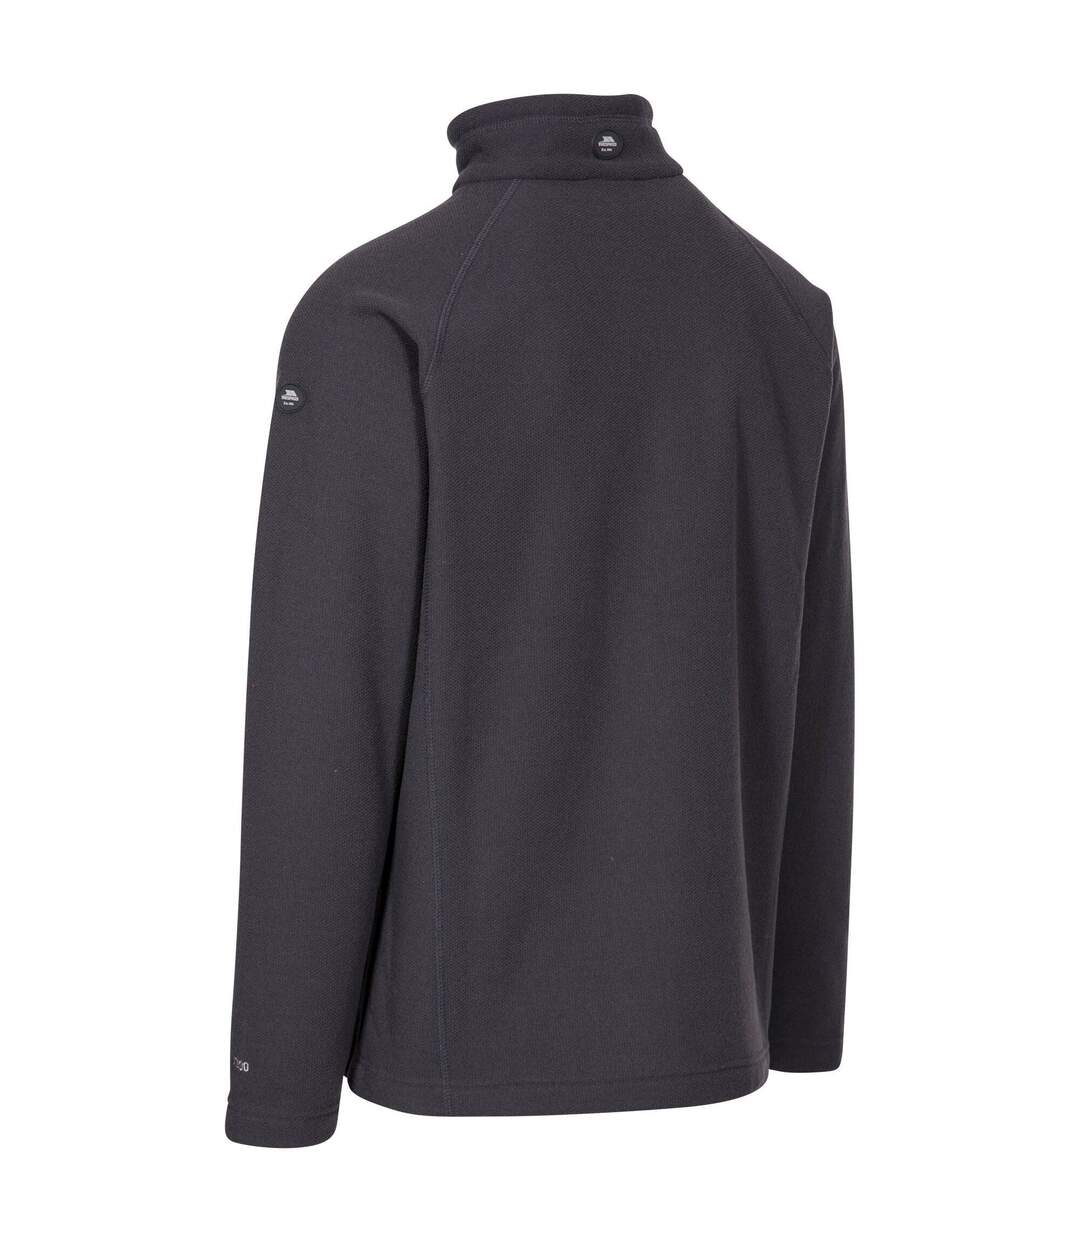 Trespass Mens Steadburn Fleece Jacket (Dark Grey) - UTTP5406